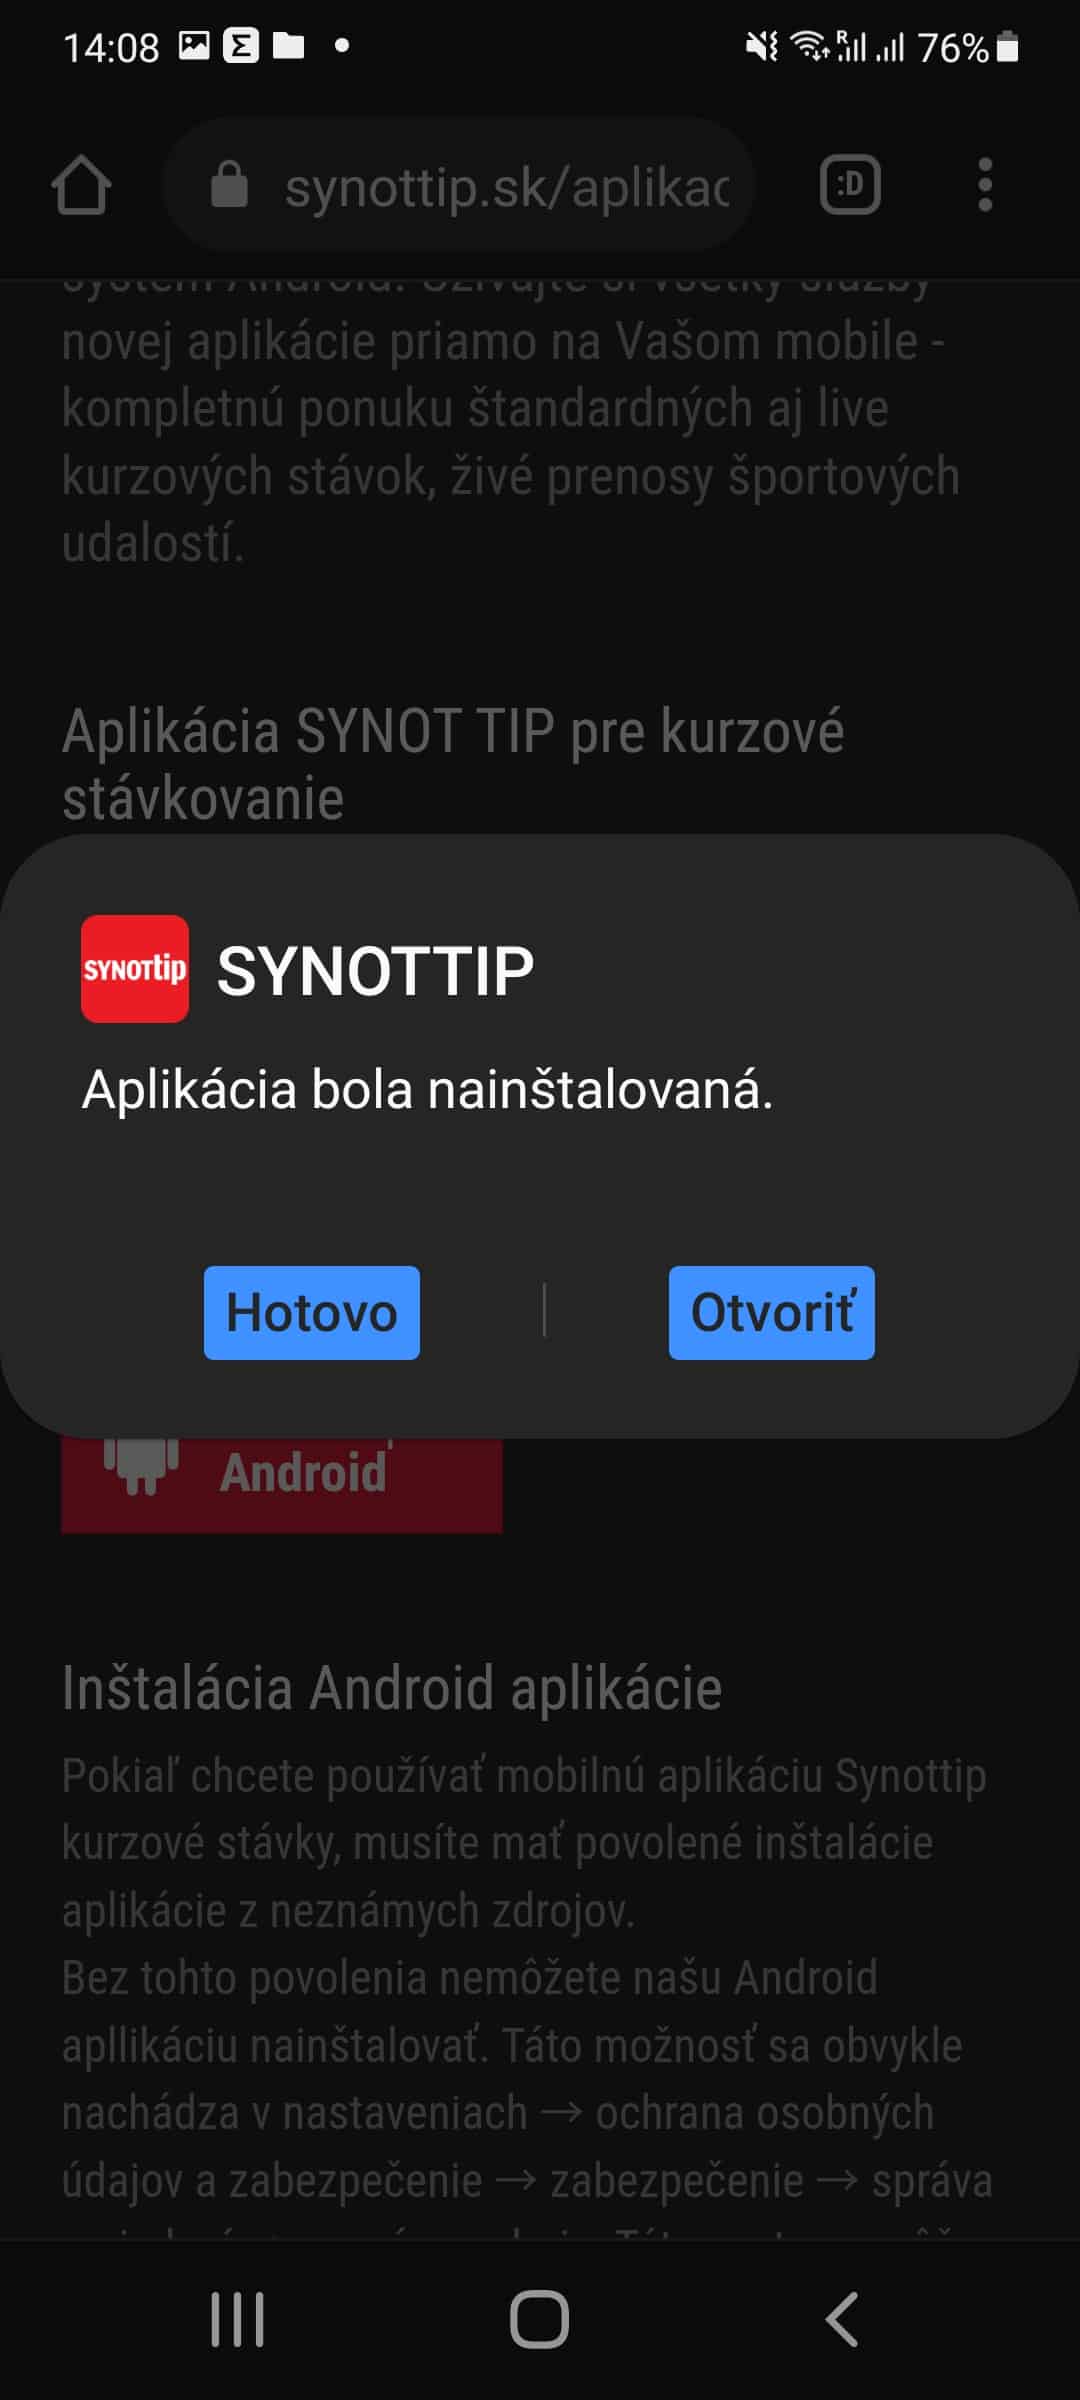 Otvoriť aplikáciu Synot Tip po nainštalovaní